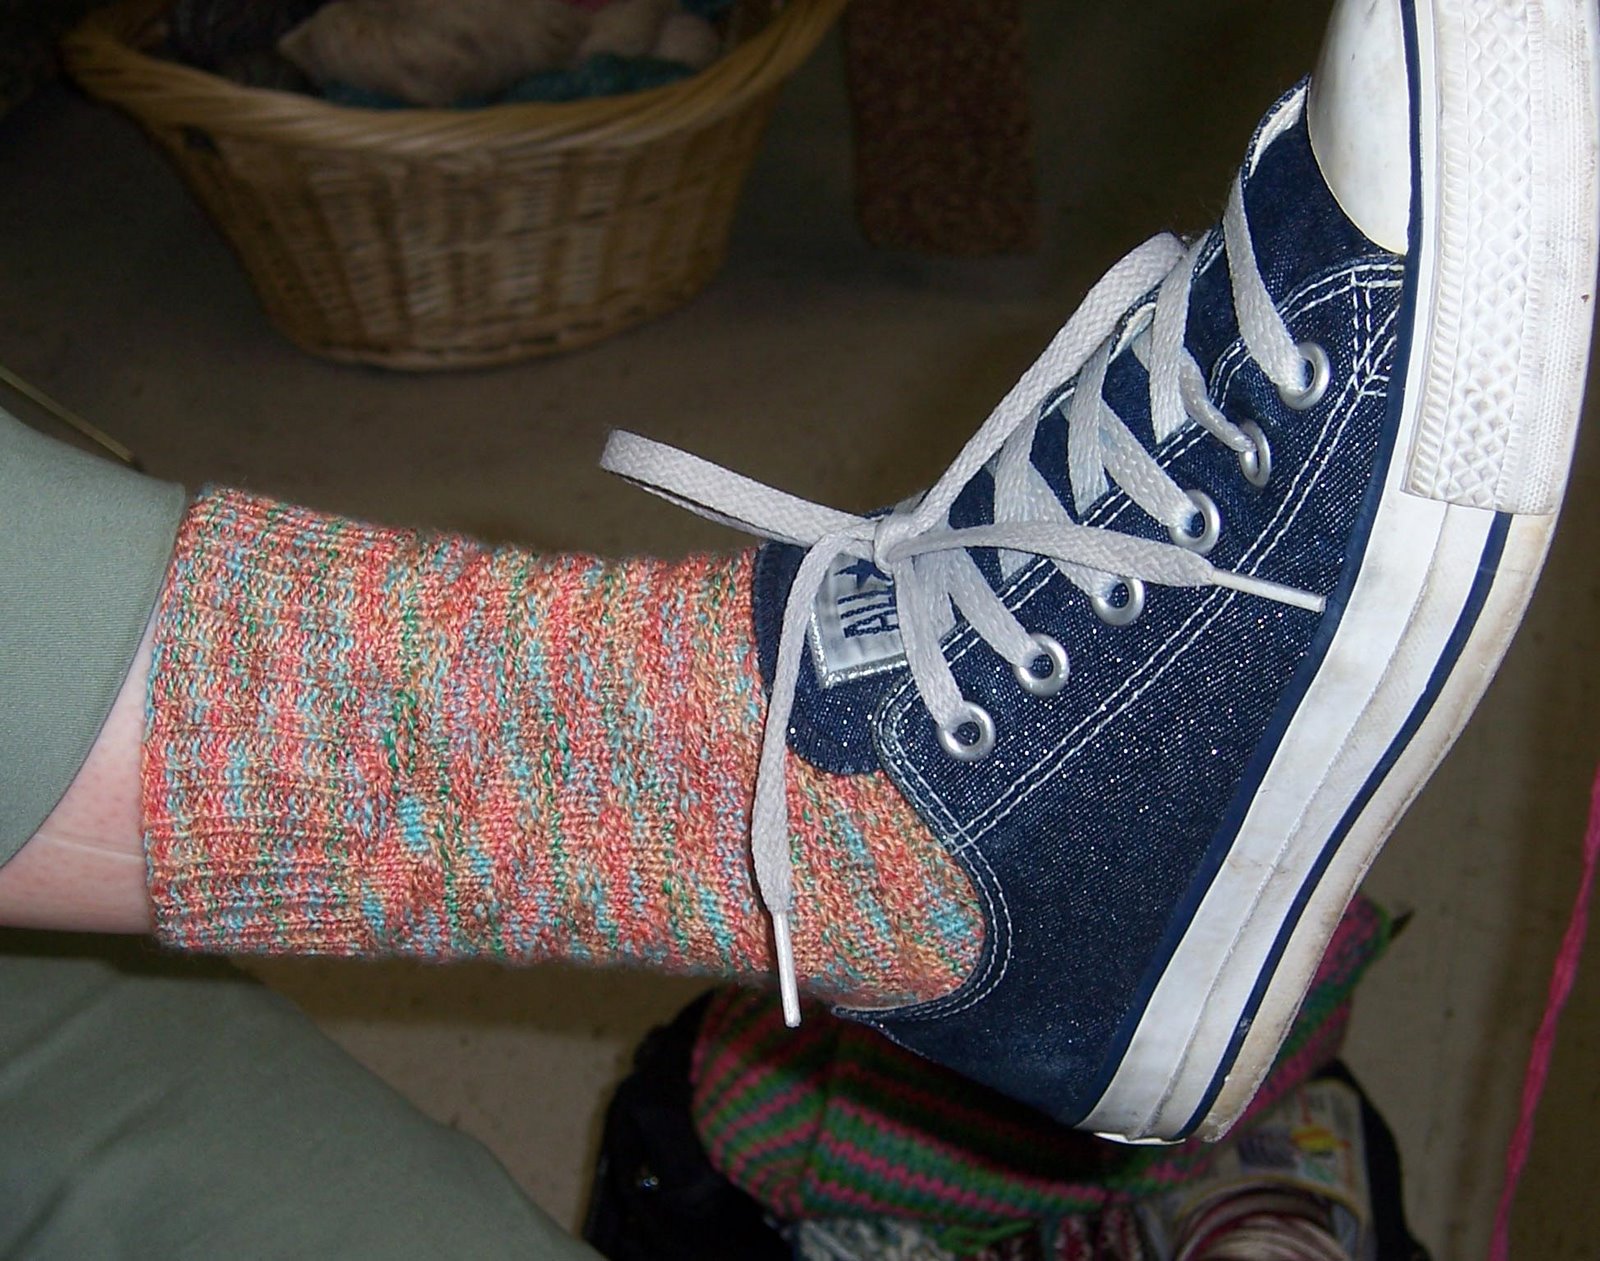 [Sarah's+socks+in+the+shoe.jpg]